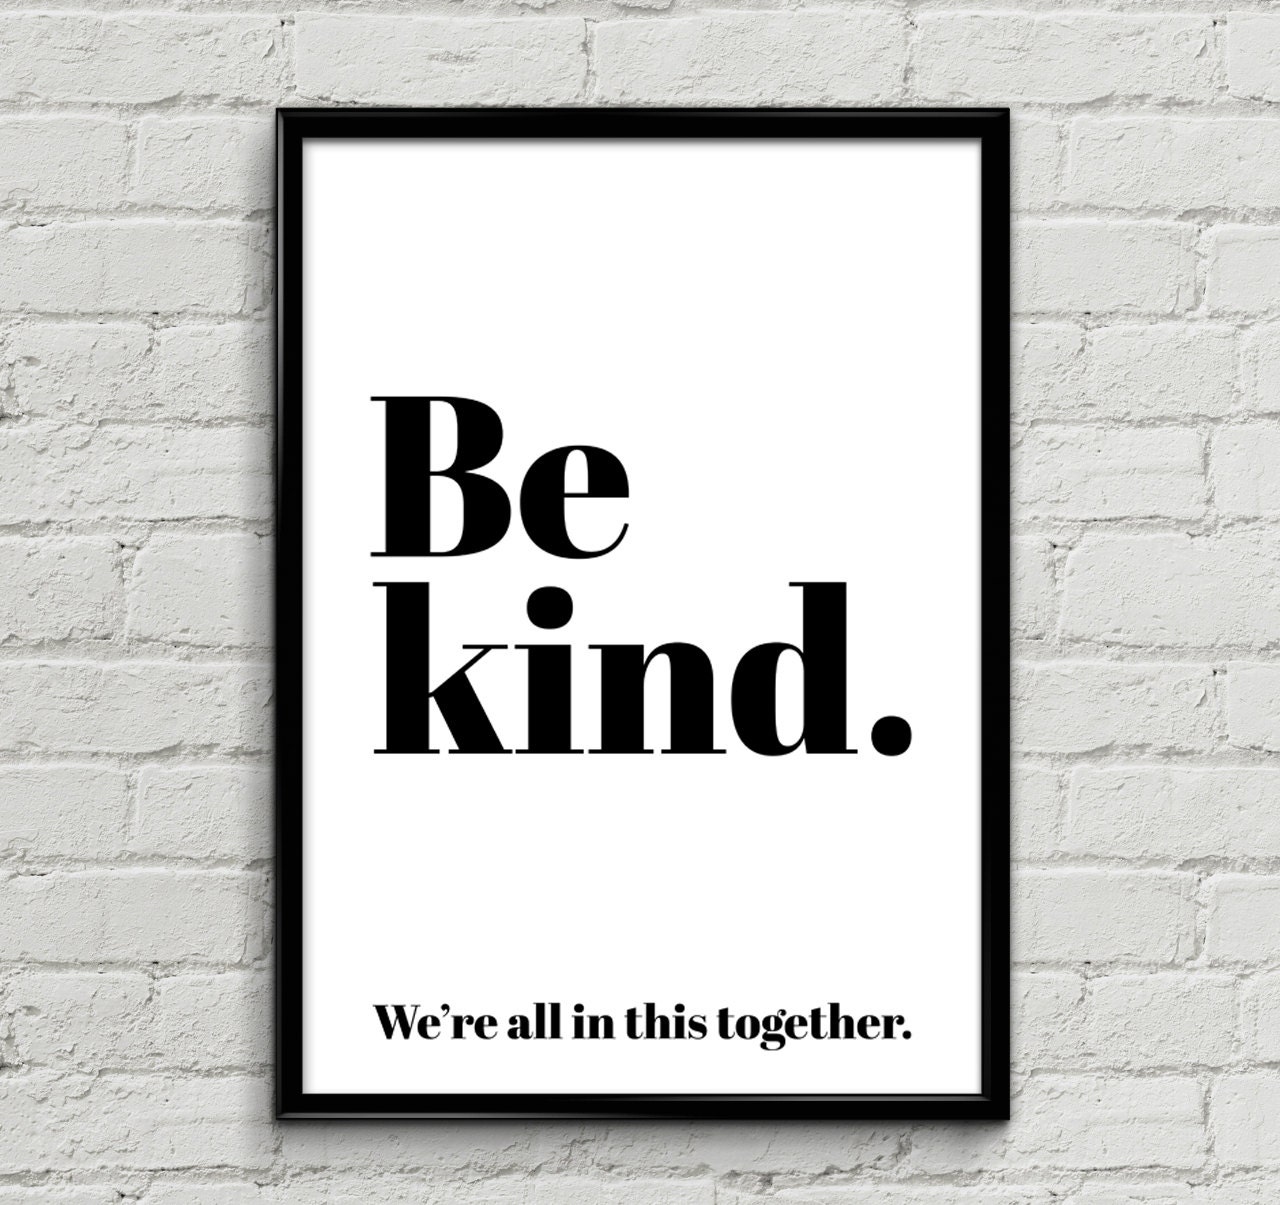 Be kind together